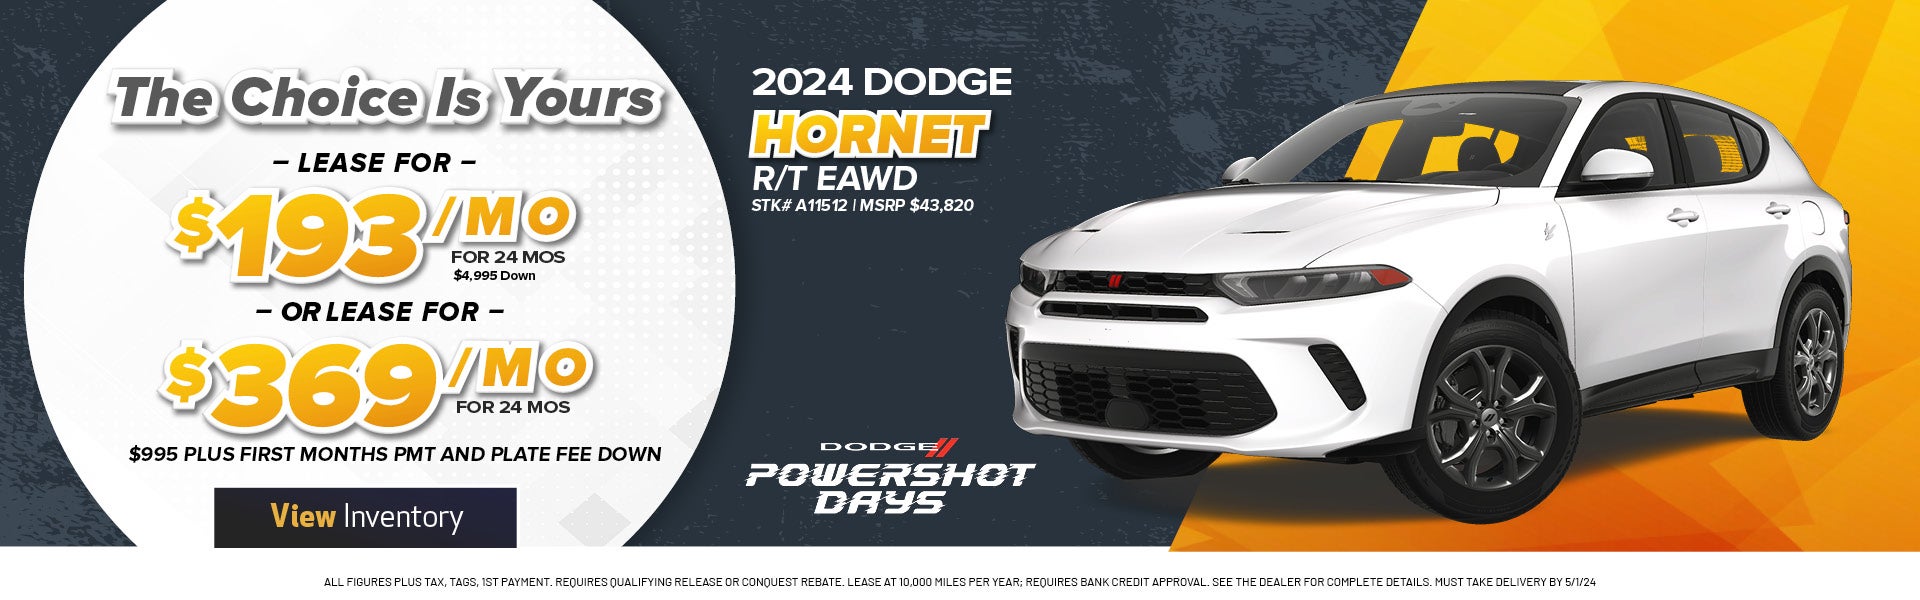 2024 DODGE HORNET R/T EAWD